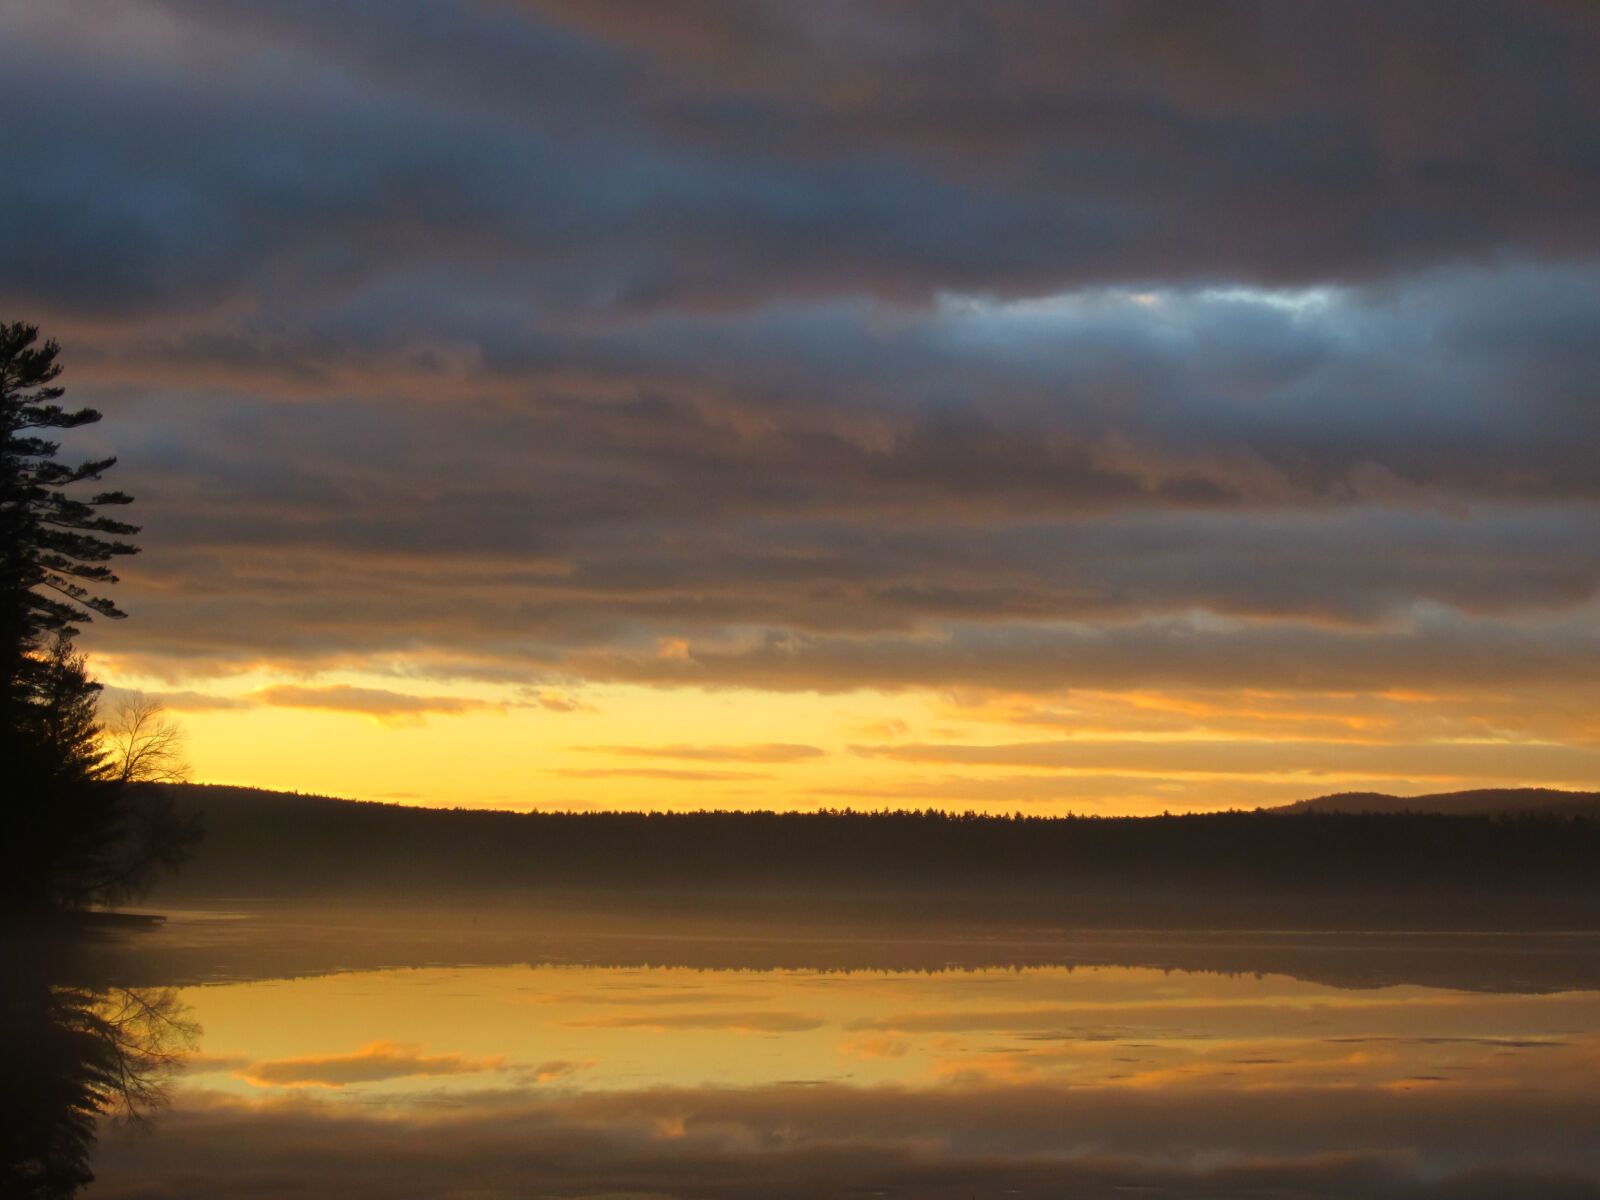 Canon PowerShot ELPH 300 HS (IXUS 220 HS / IXY 410F) sample photo. Fog, mist, sunrise, lake photography